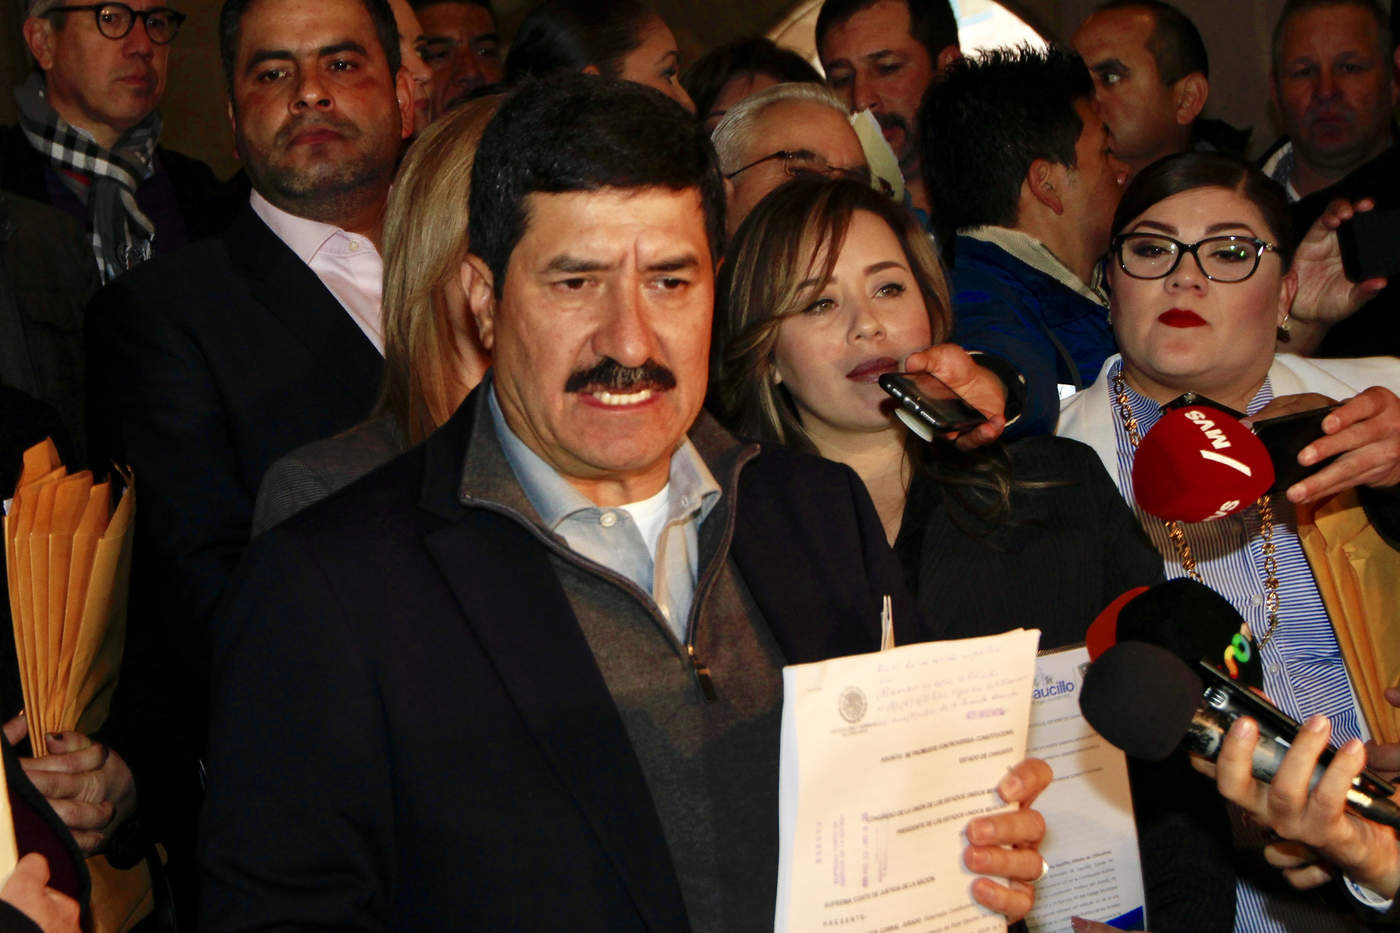 El gobernador de Chihuahua, Javier Corral, anunció que busca entregar una carta al presidente Andrés Manuel López Obrador, suscrita por los 23 municipios mineros de la entidad, para plantearle diversas consideraciones sobre la modificación al uso de los recursos del Fondo Minero. (NOTIMEX)